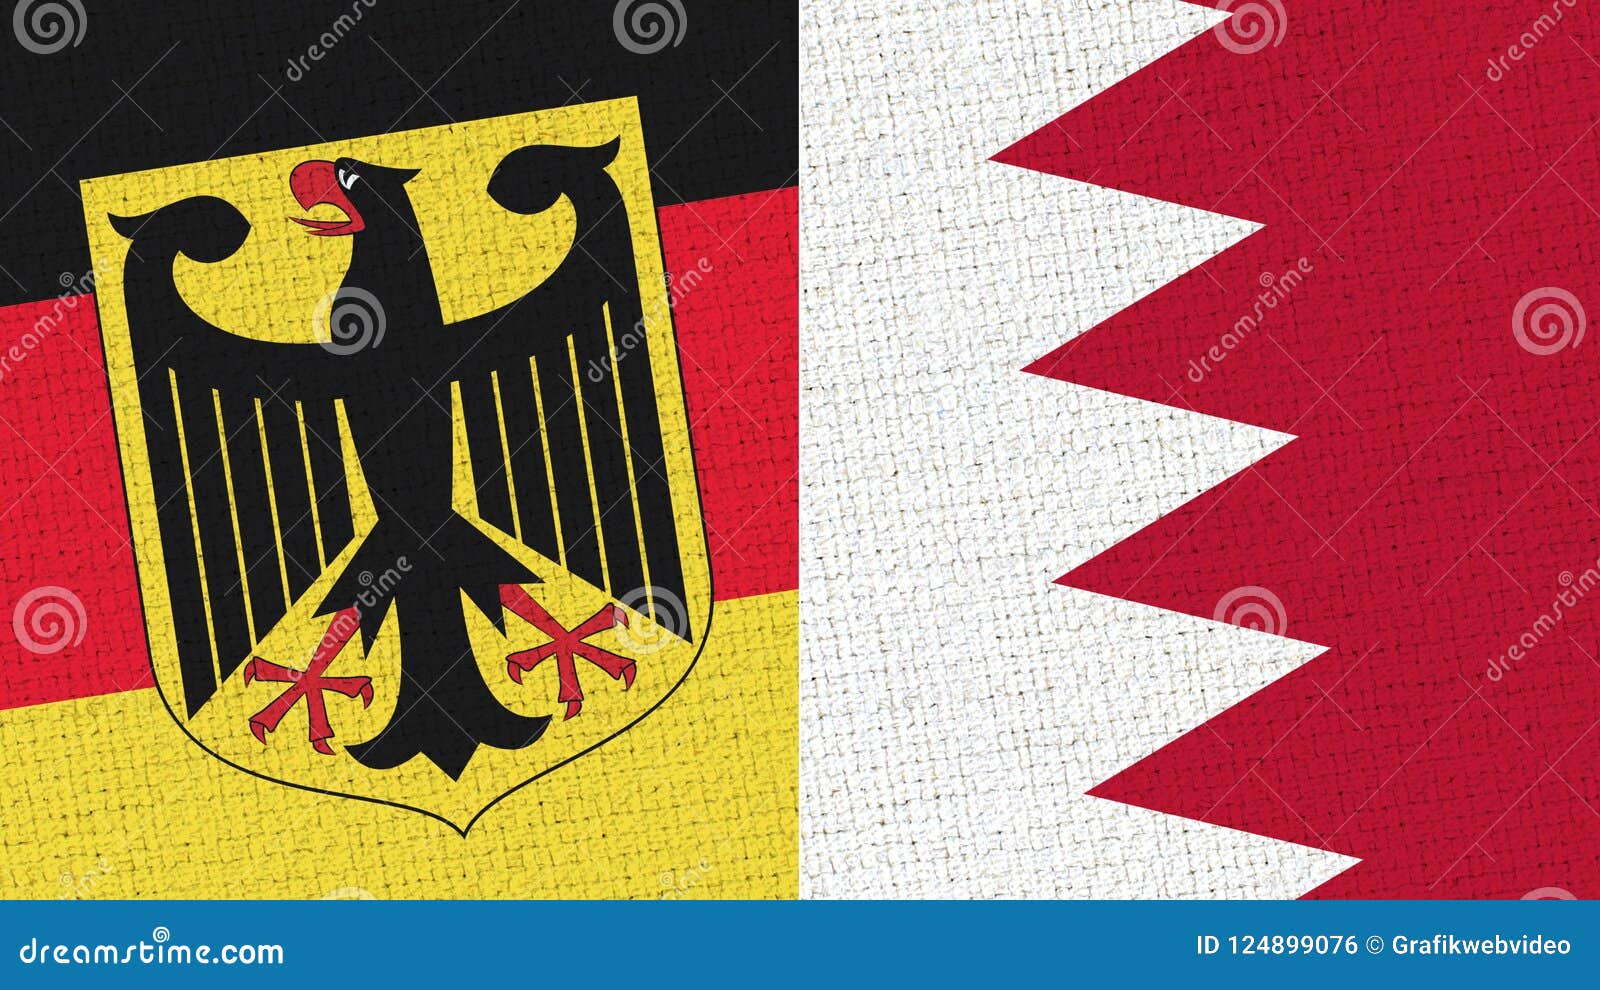 germany and bahrein - bahrain flag